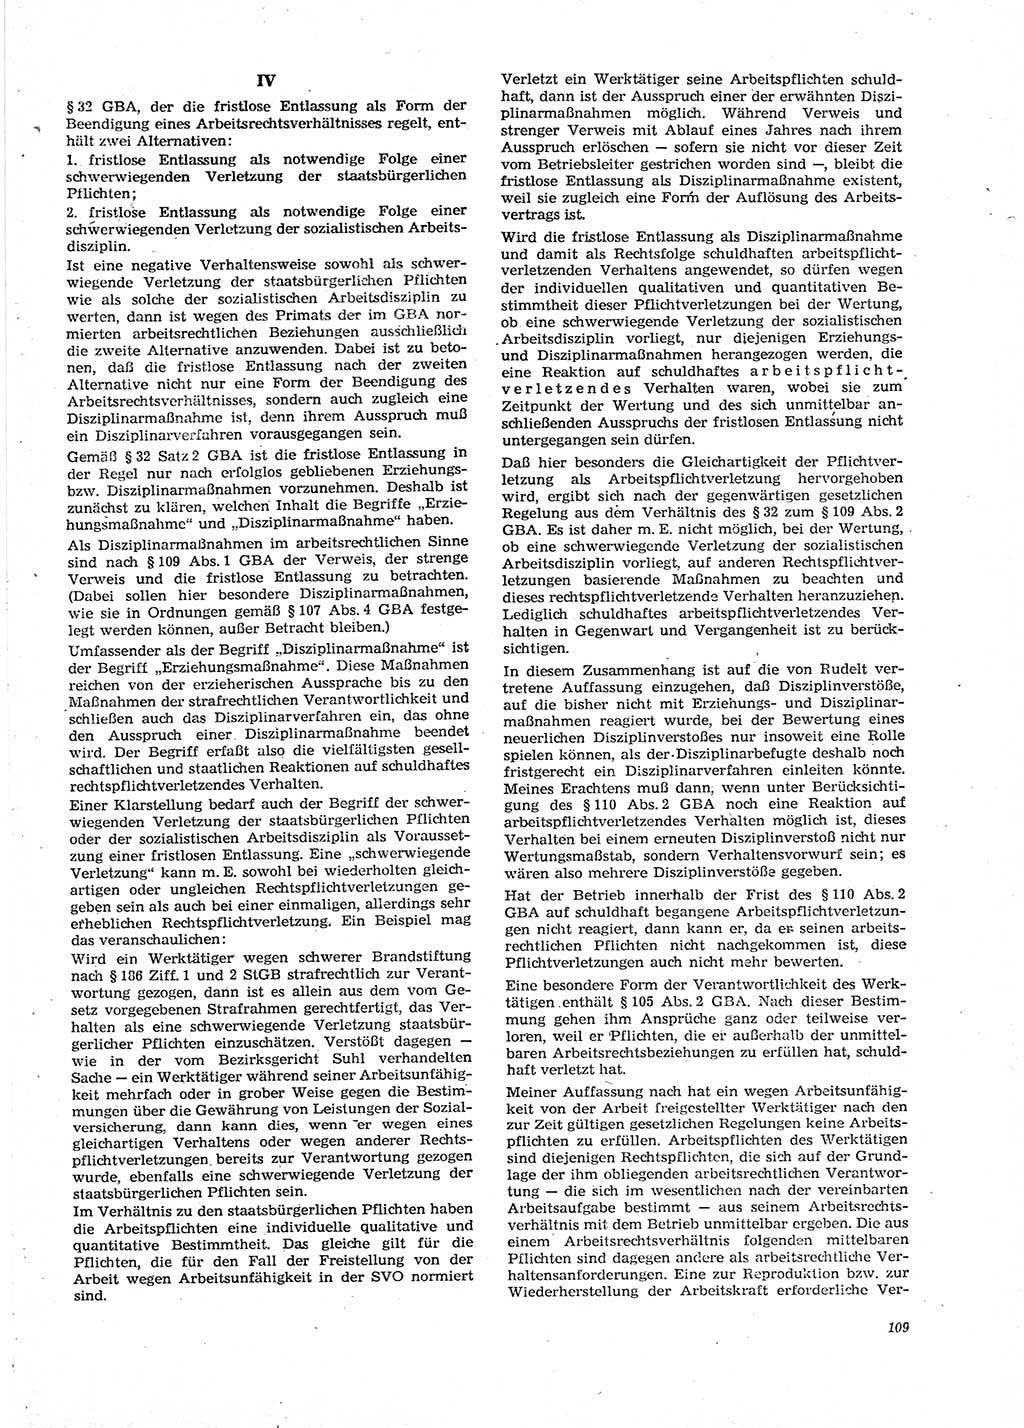 Neue Justiz (NJ), Zeitschrift für Recht und Rechtswissenschaft [Deutsche Demokratische Republik (DDR)], 29. Jahrgang 1975, Seite 109 (NJ DDR 1975, S. 109)